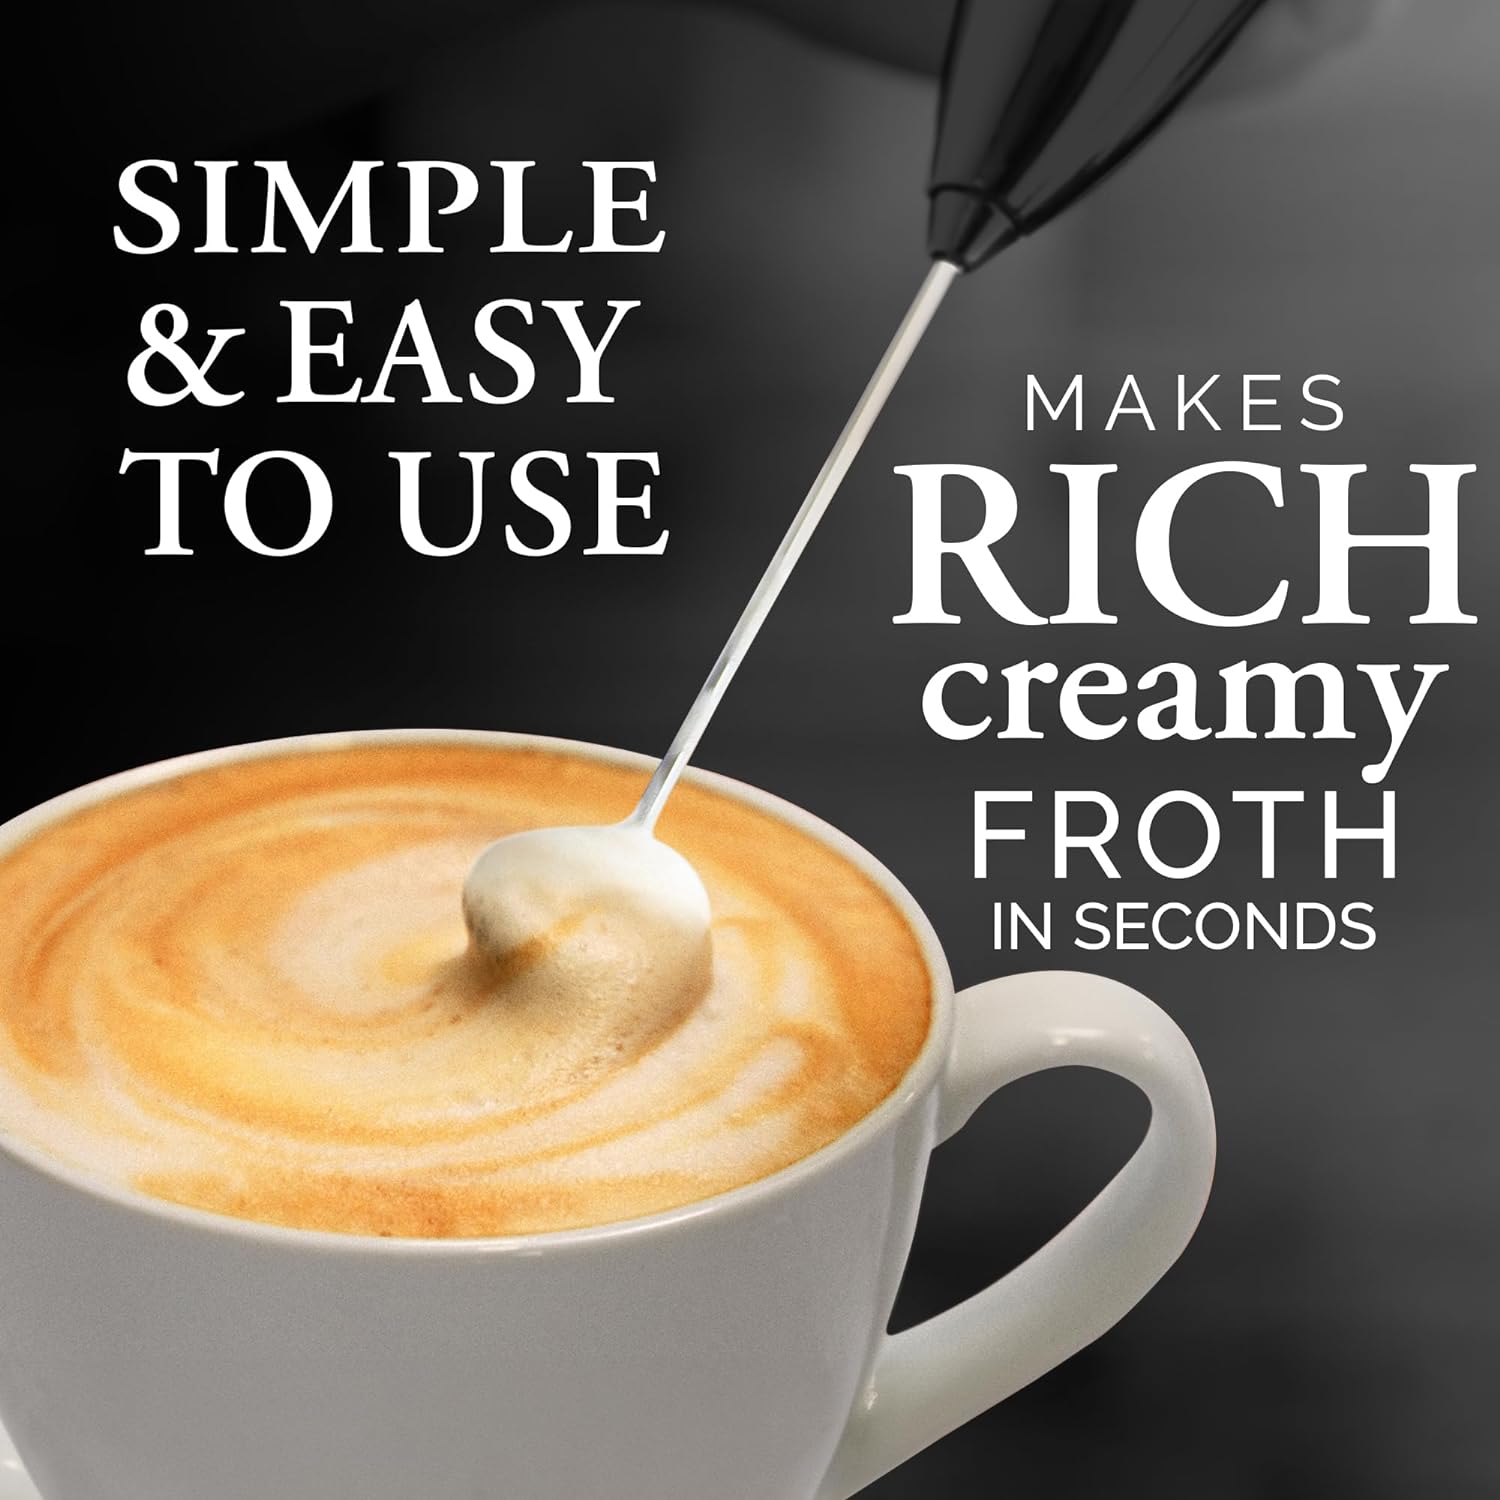  Zulay Magia - Máquina de café espresso súper automática -  Máquina de café espresso automática duradera con molinillo - Cafetera  espresso con pantalla táctil de 7 pulgadas fácil de usar, 19